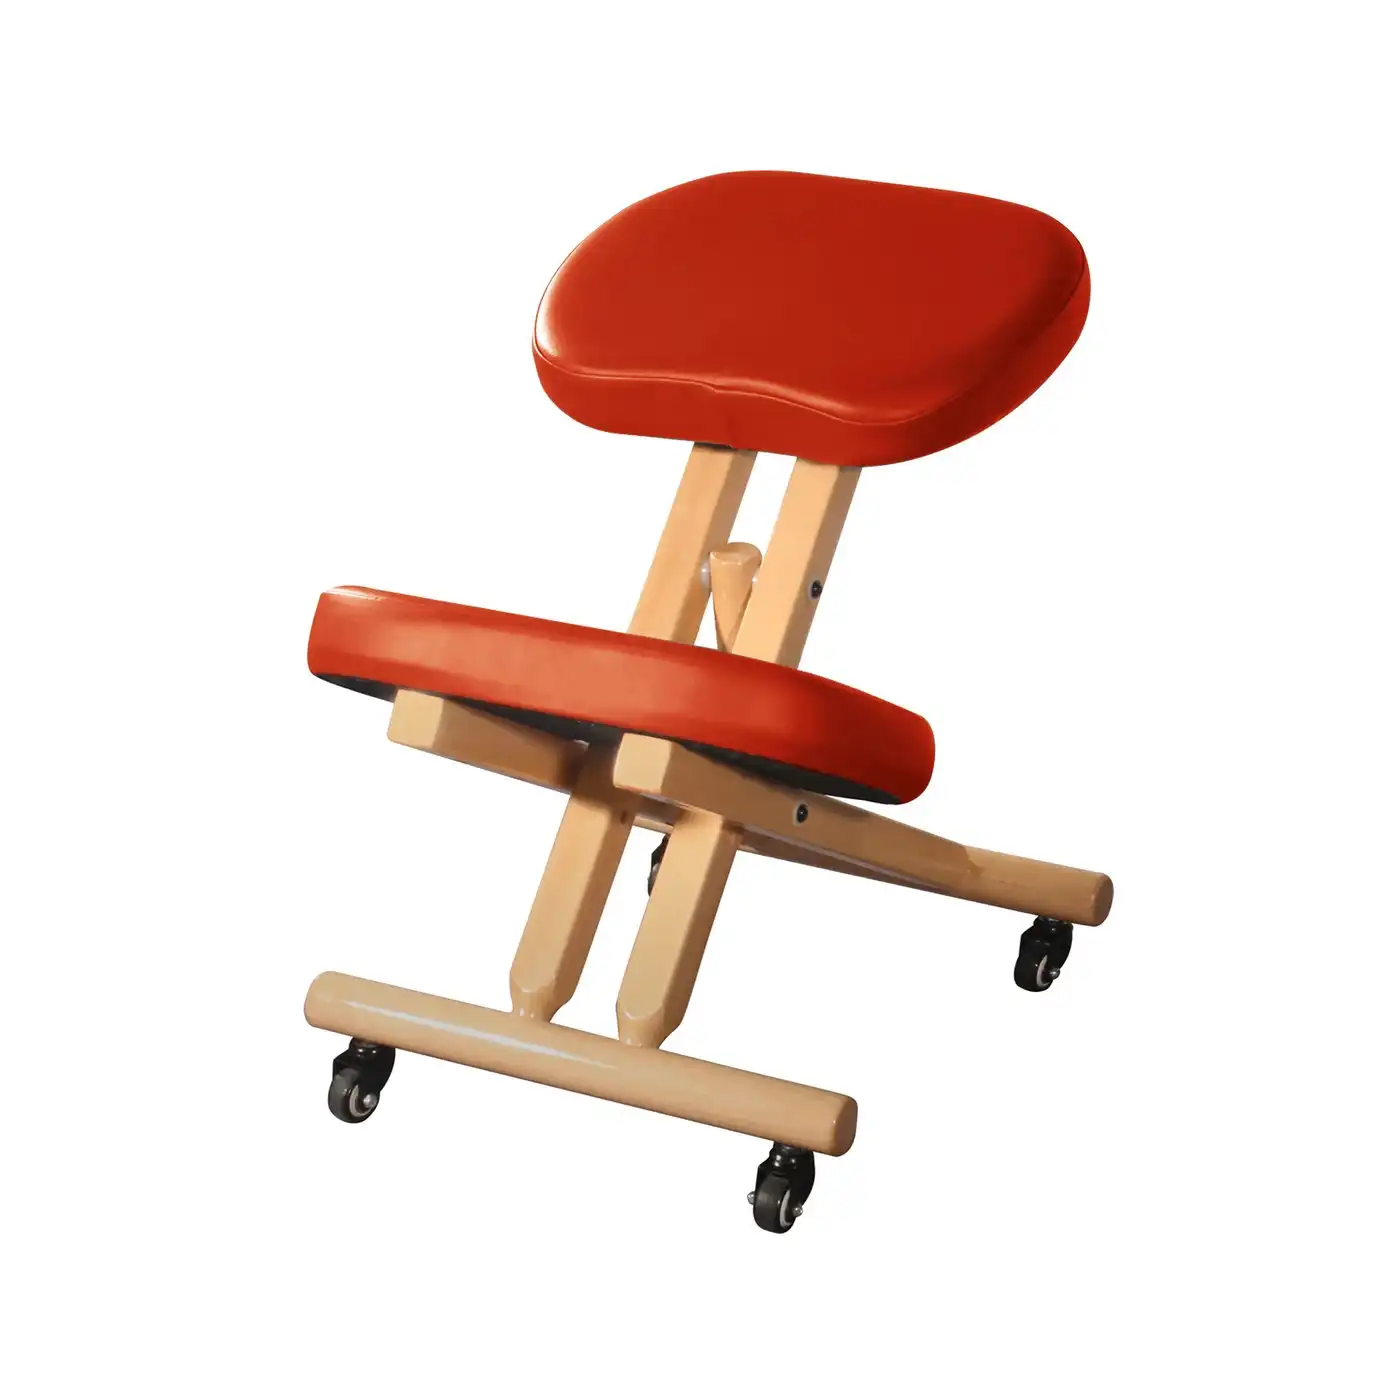 Produttore all'ingrosso OEM PC61 sedia postura con schienale-piedi fissi sedie ergonomiche in ginocchio sgabelli sedia ergonomica in ginocchio